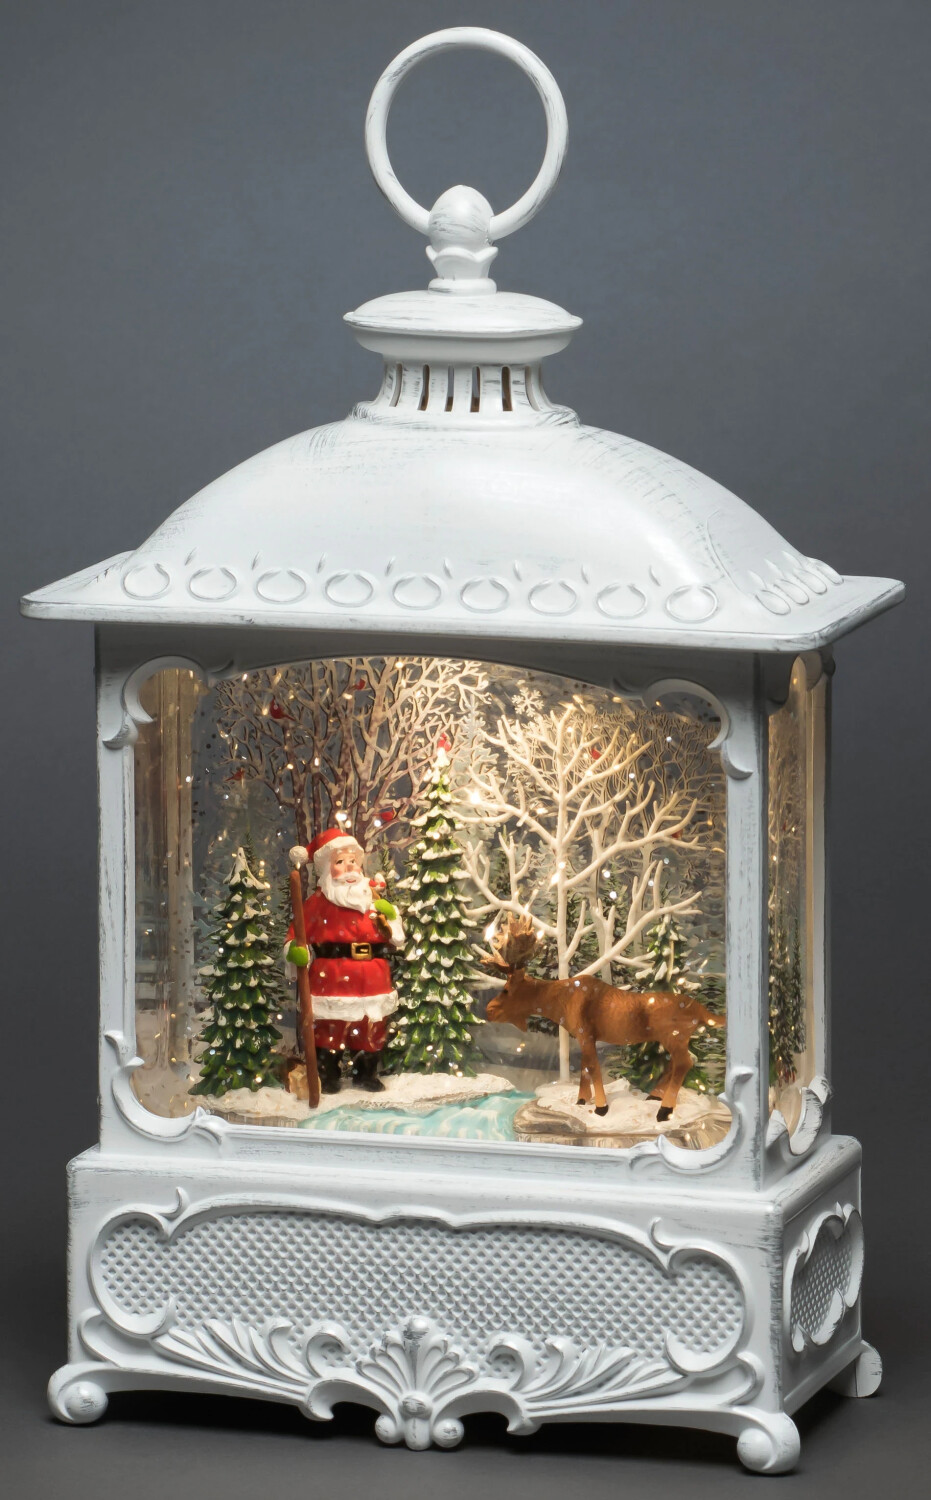 Konstsmide LED-Szenerie Weihnachtsmann Elch LED Weiß beschneit (4397-200)  ab 64,90 € | Preisvergleich bei